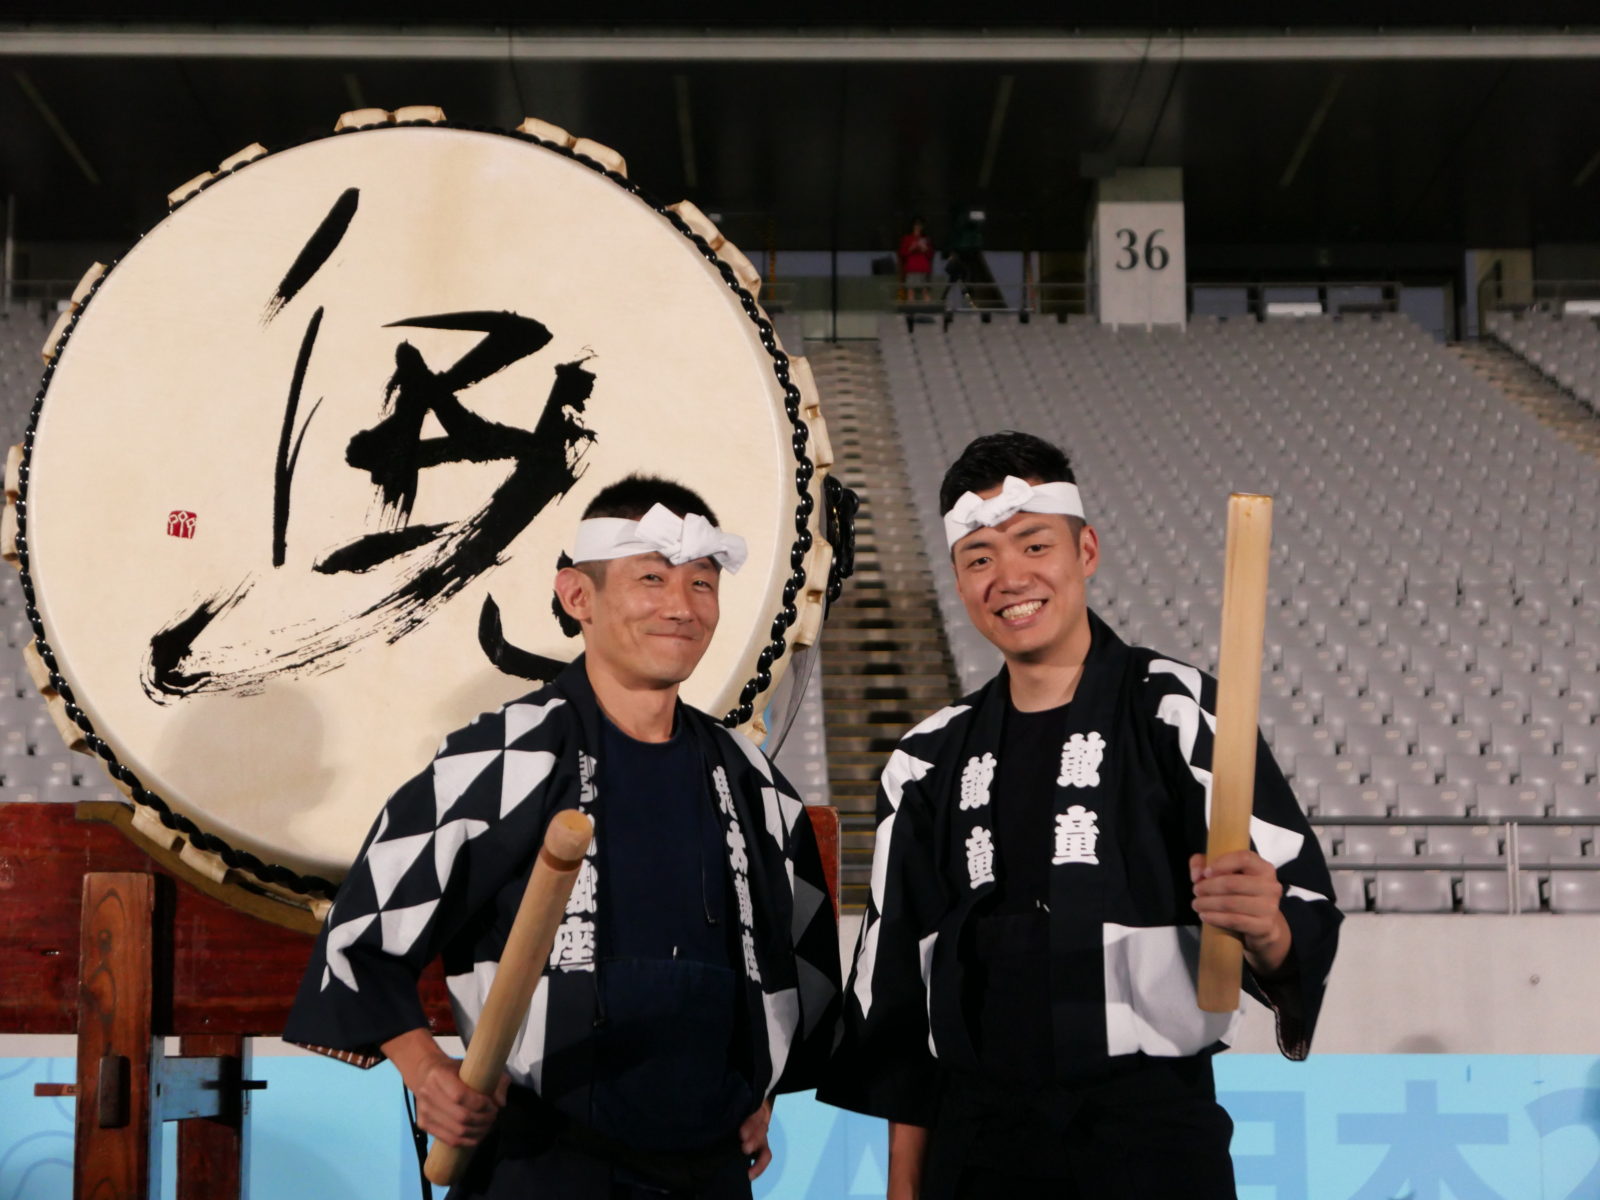 19年9月日ラグビーワールドカップ19日本大会 開会式出演 太鼓芸能集団 鼓童